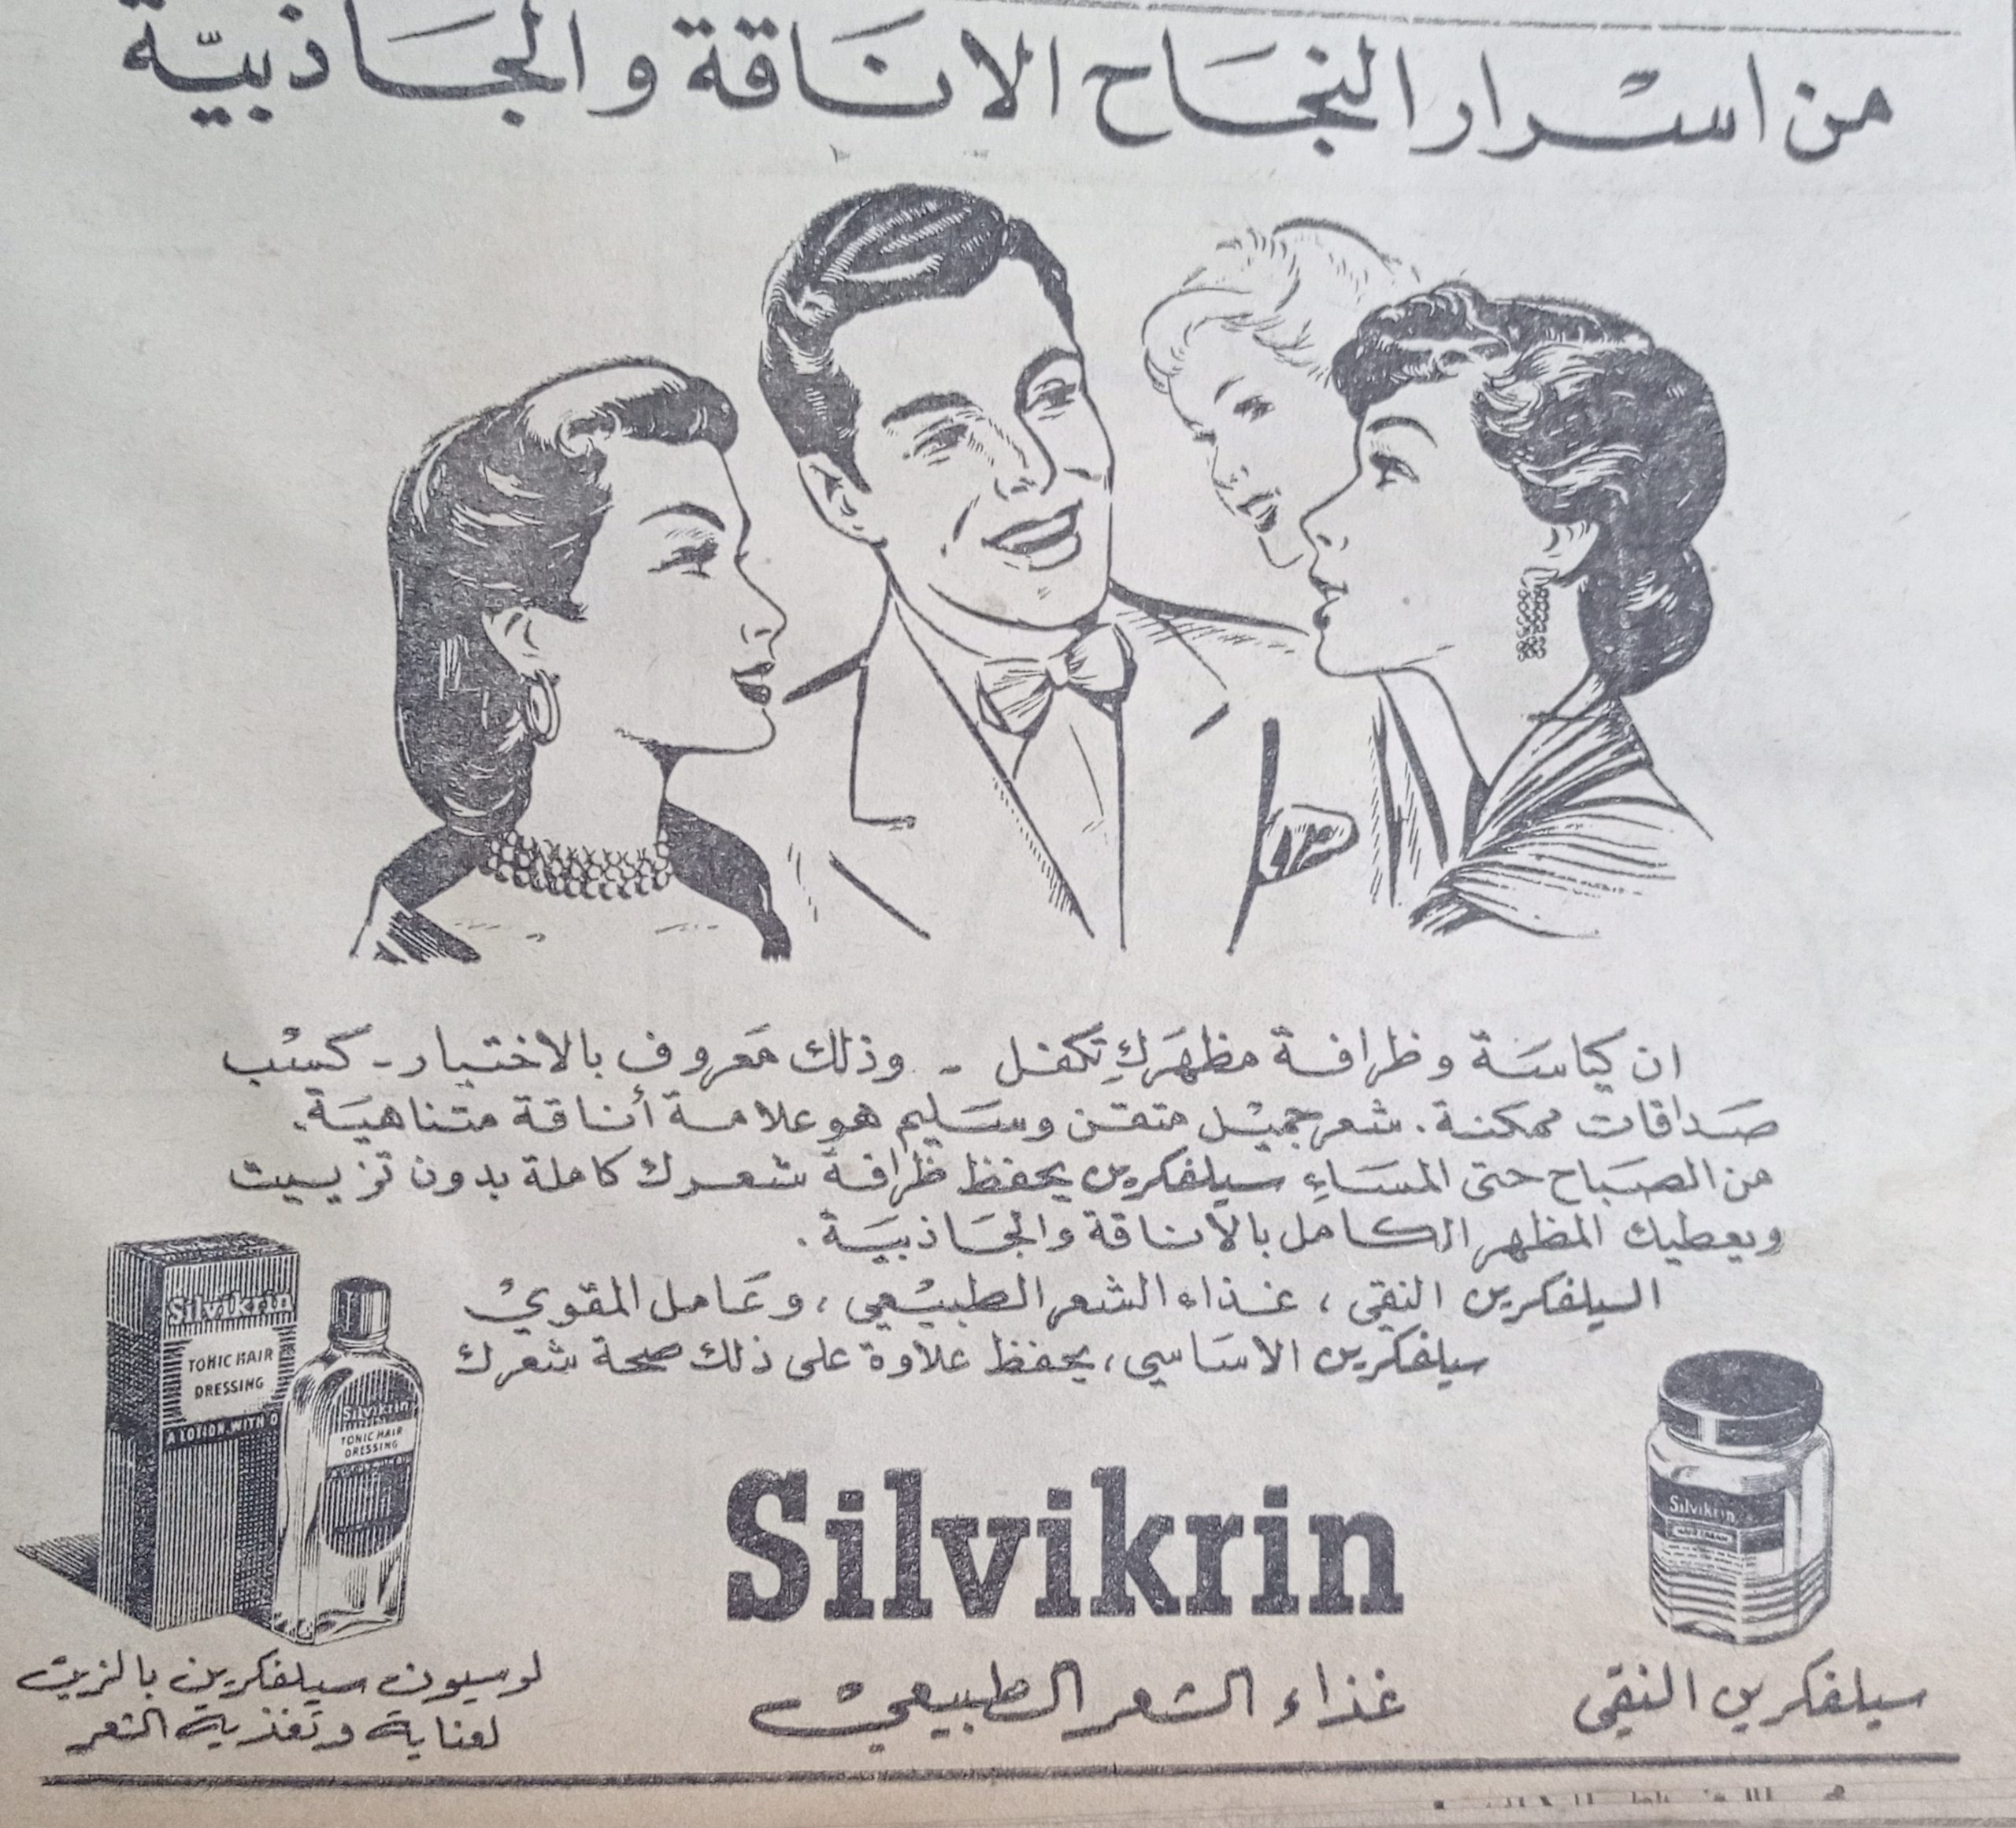 التاريخ السوري المعاصر - إعلان عن منتج سيلفكرين غذاء الشعر الطبيعي عام 1956